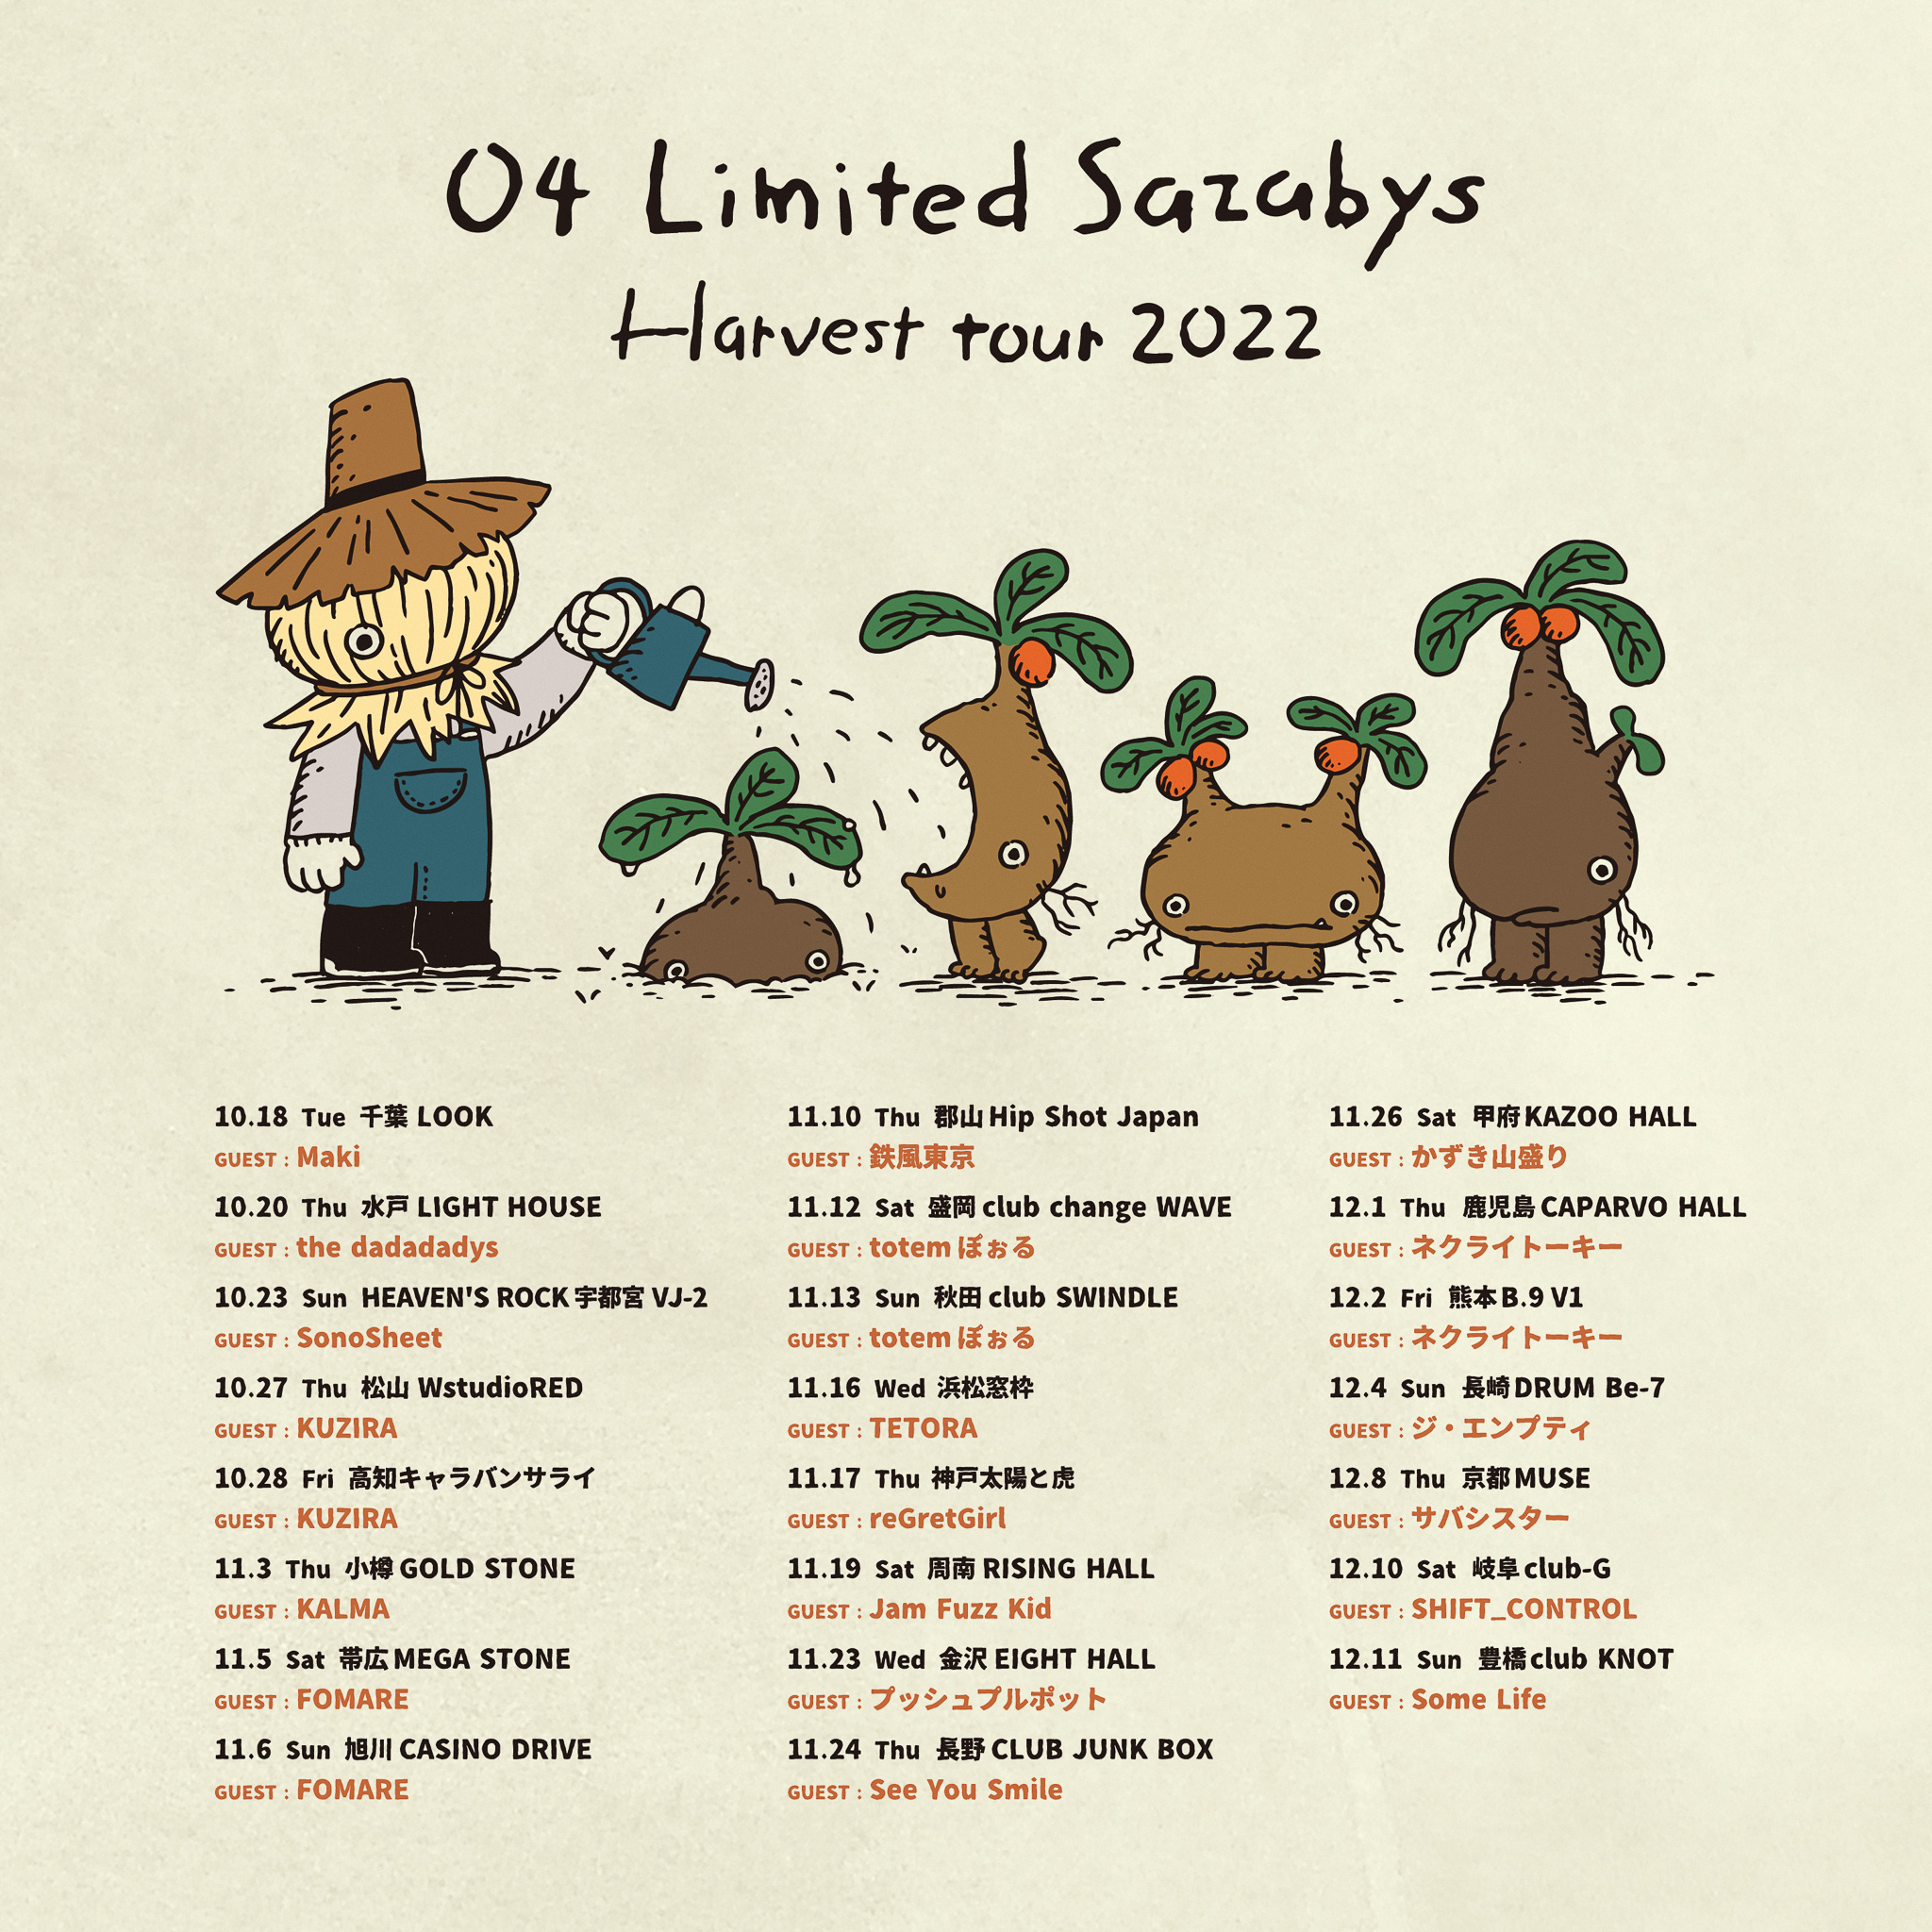 【愛知】04 Limited Sazabys "Harvest tour 2022" (豊橋club KNOT)